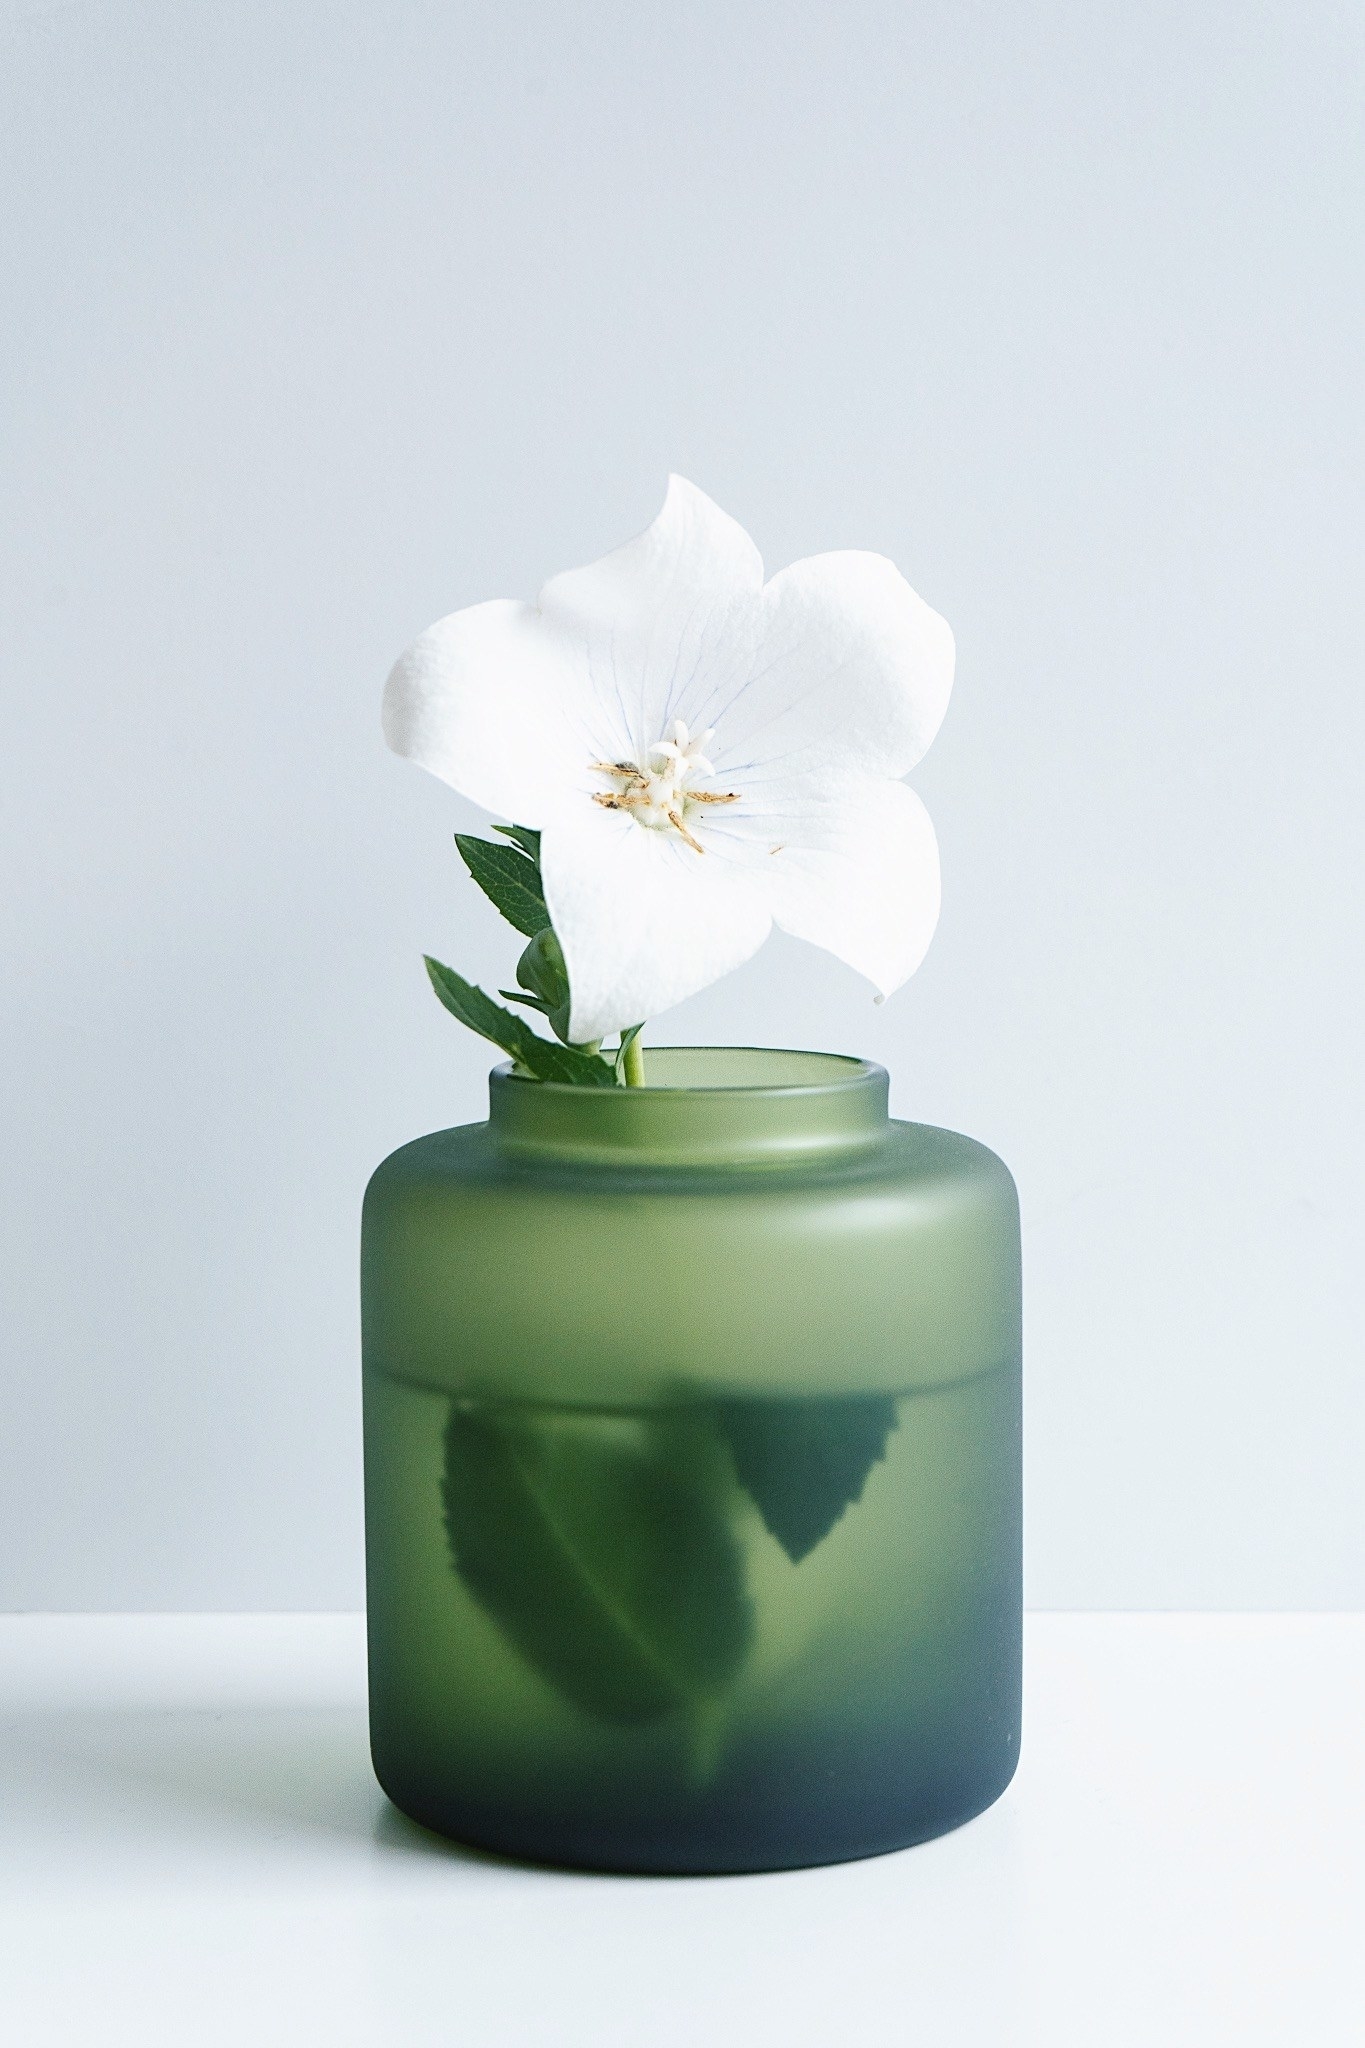 IKEA（イケア）のオススメ花瓶「KONSTFULL コンストフル花瓶 フロストガラス グリーン」